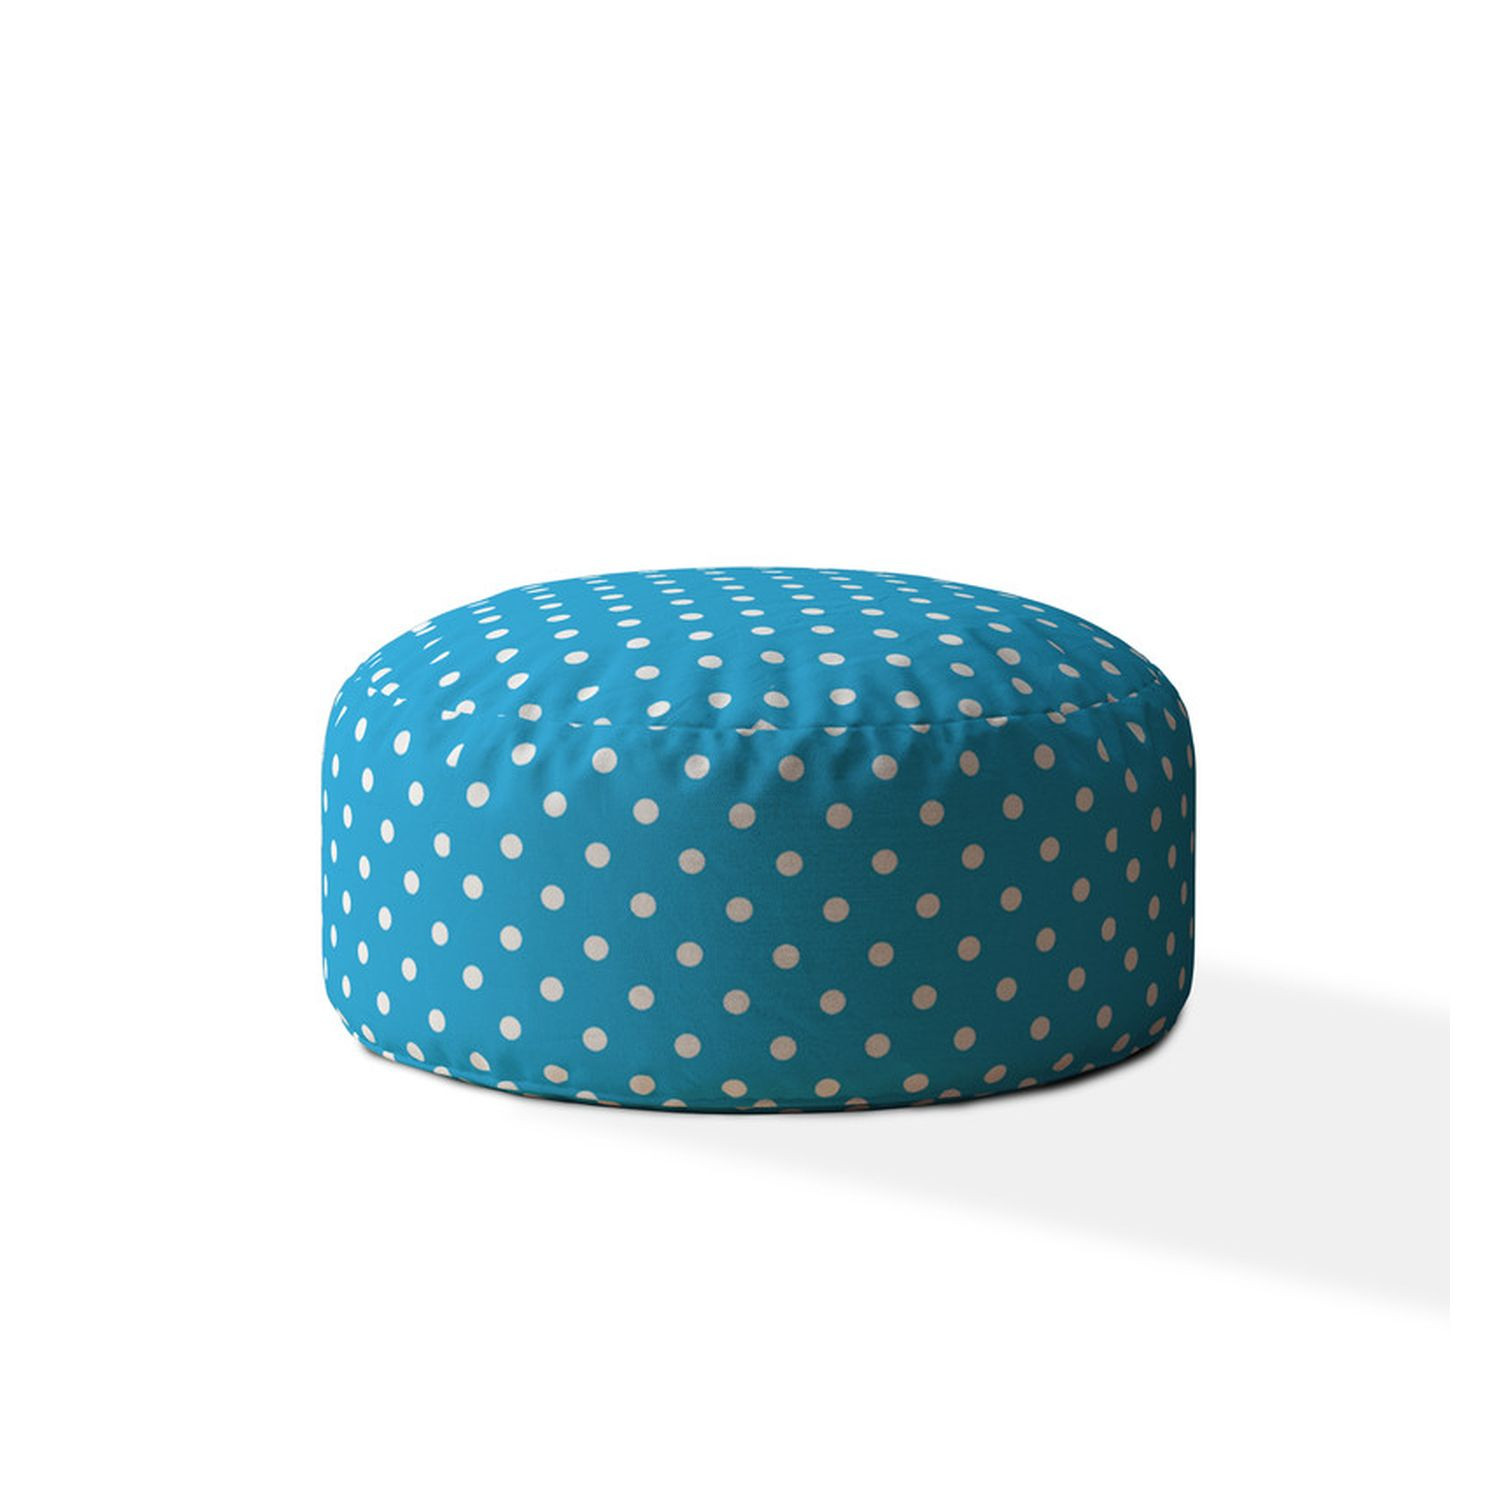 24" Blue Cotton Round Polka Dots Pouf Ottoman-518344-1